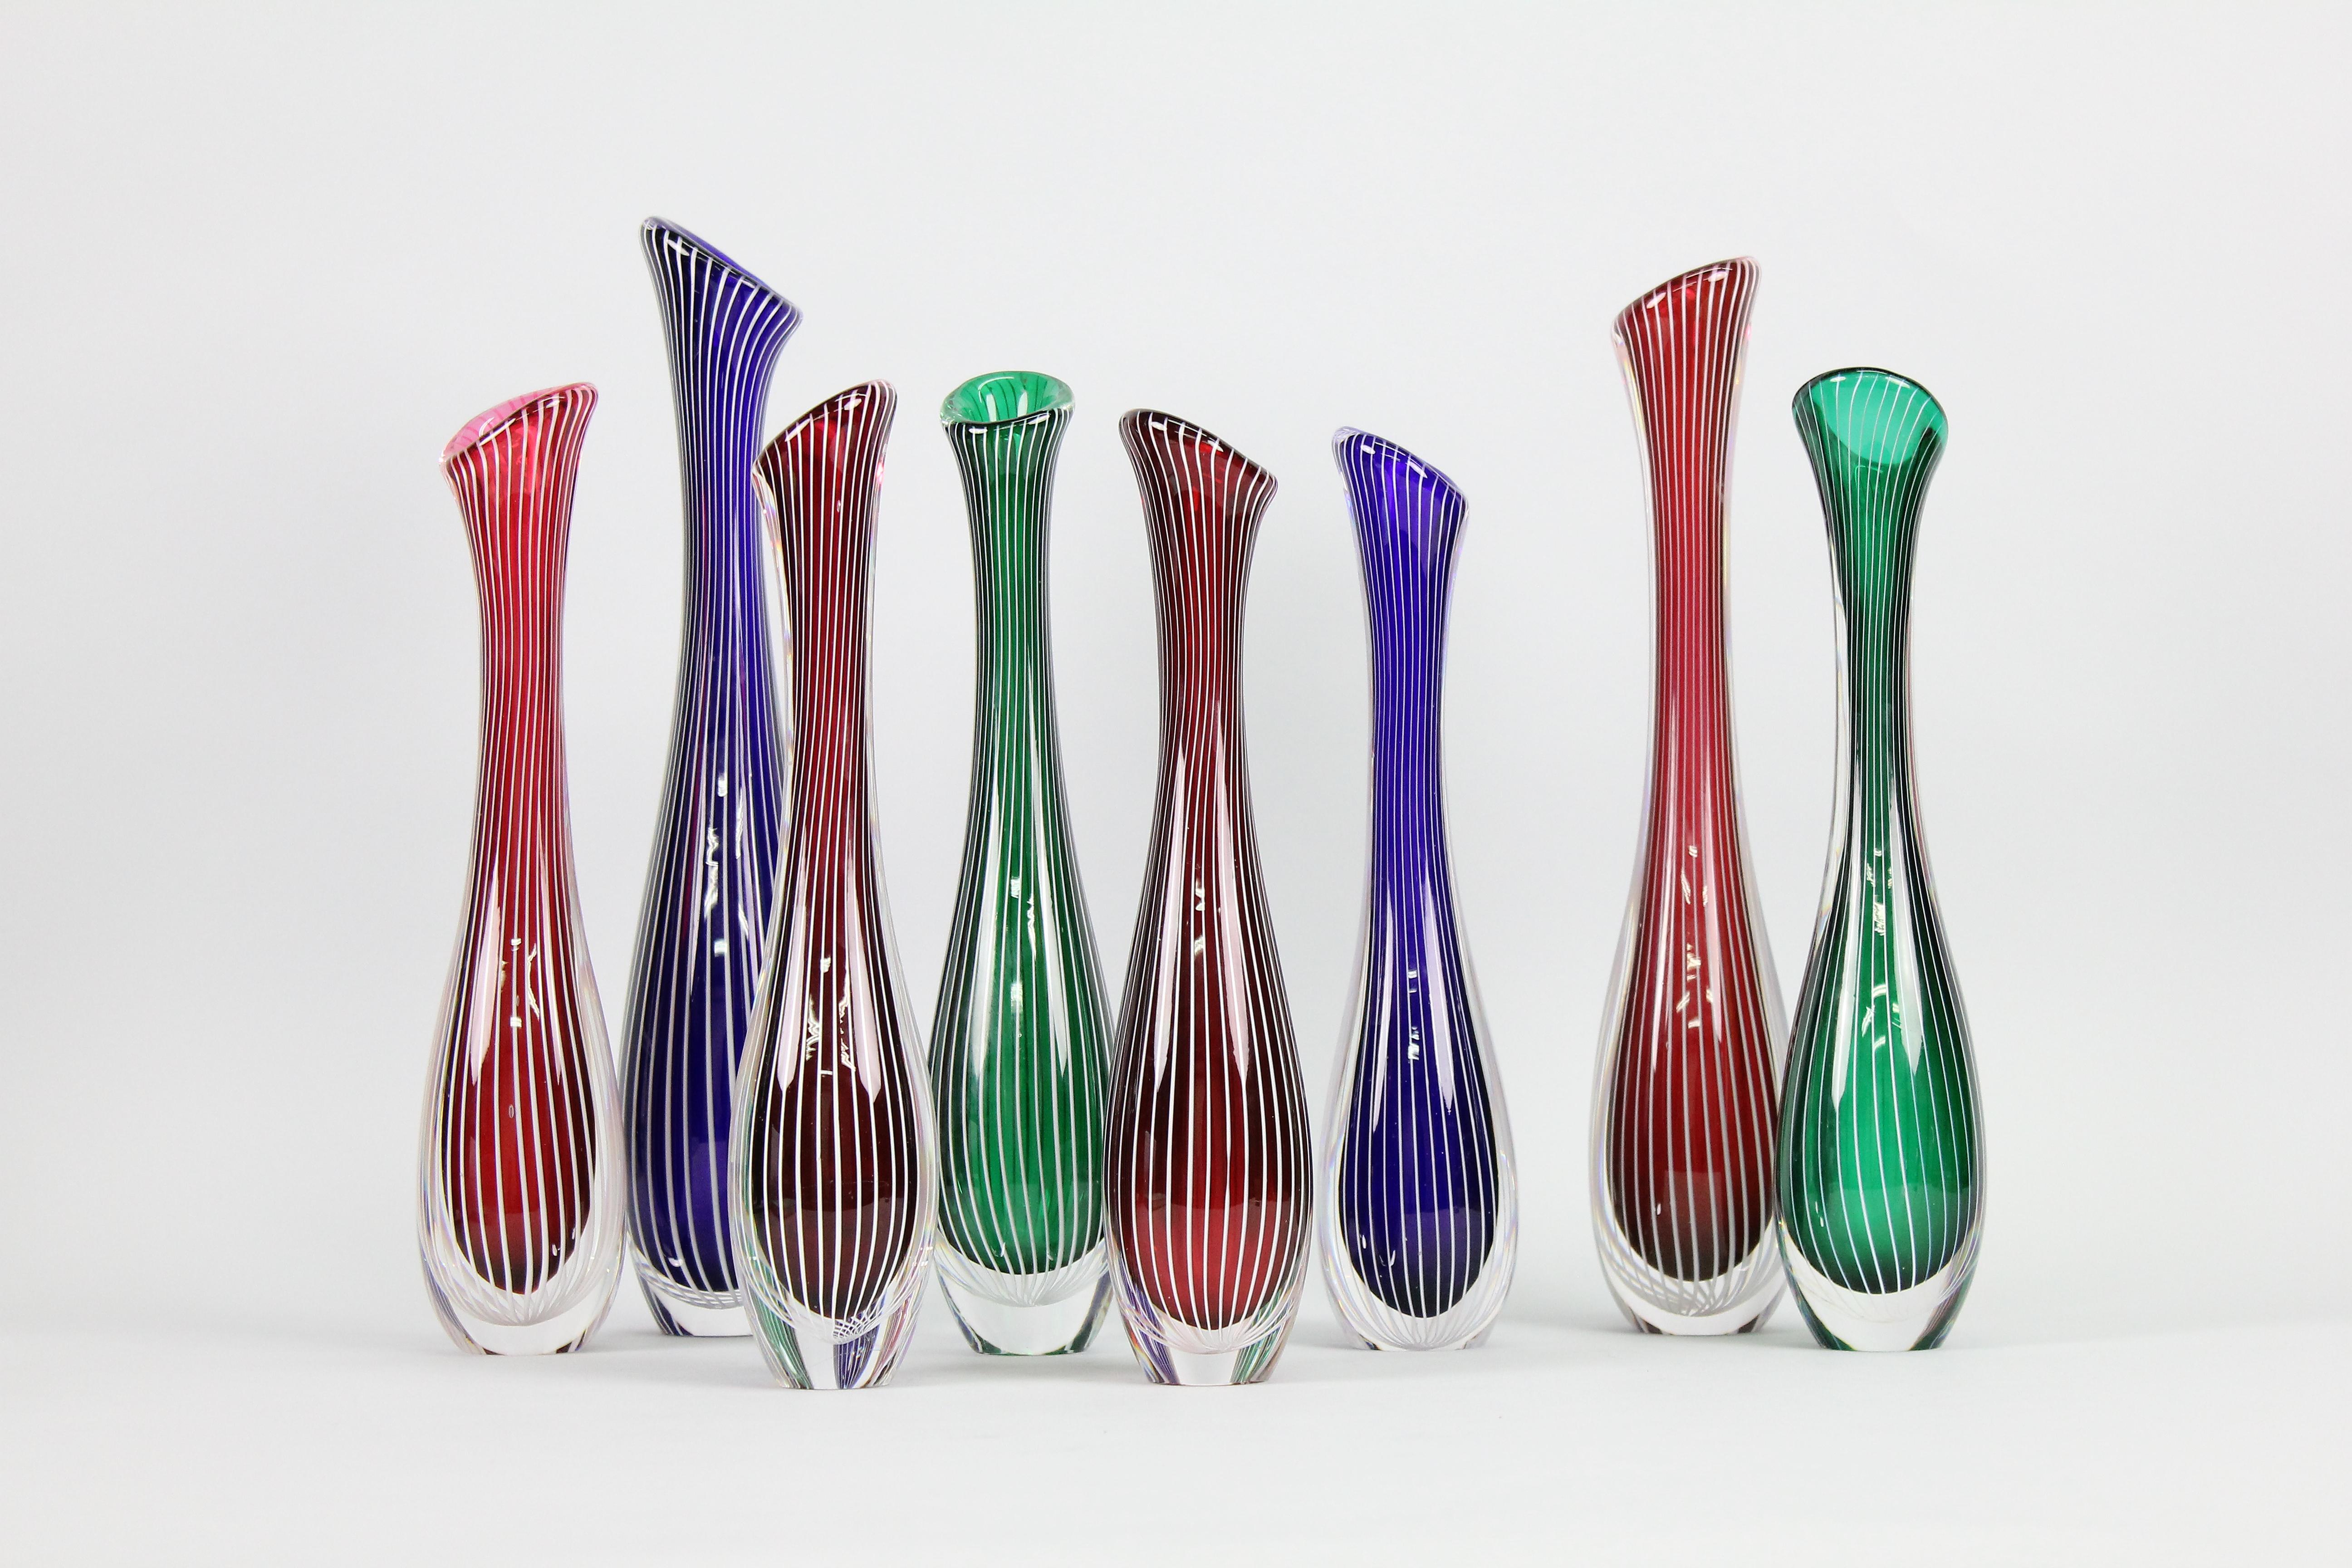 Vintage Zebra Art Glass Vasen von Vicke Lindstrand für Kosta 1950s.

Ein tolles Set von 8 Vasen in vier verschiedenen Farben und in 8 verschiedenen Höhen.
Hergestellt in den Farben Blau, Rot, Grün und Rosa mit klarem Glas und weißen Streifen.
Höhen